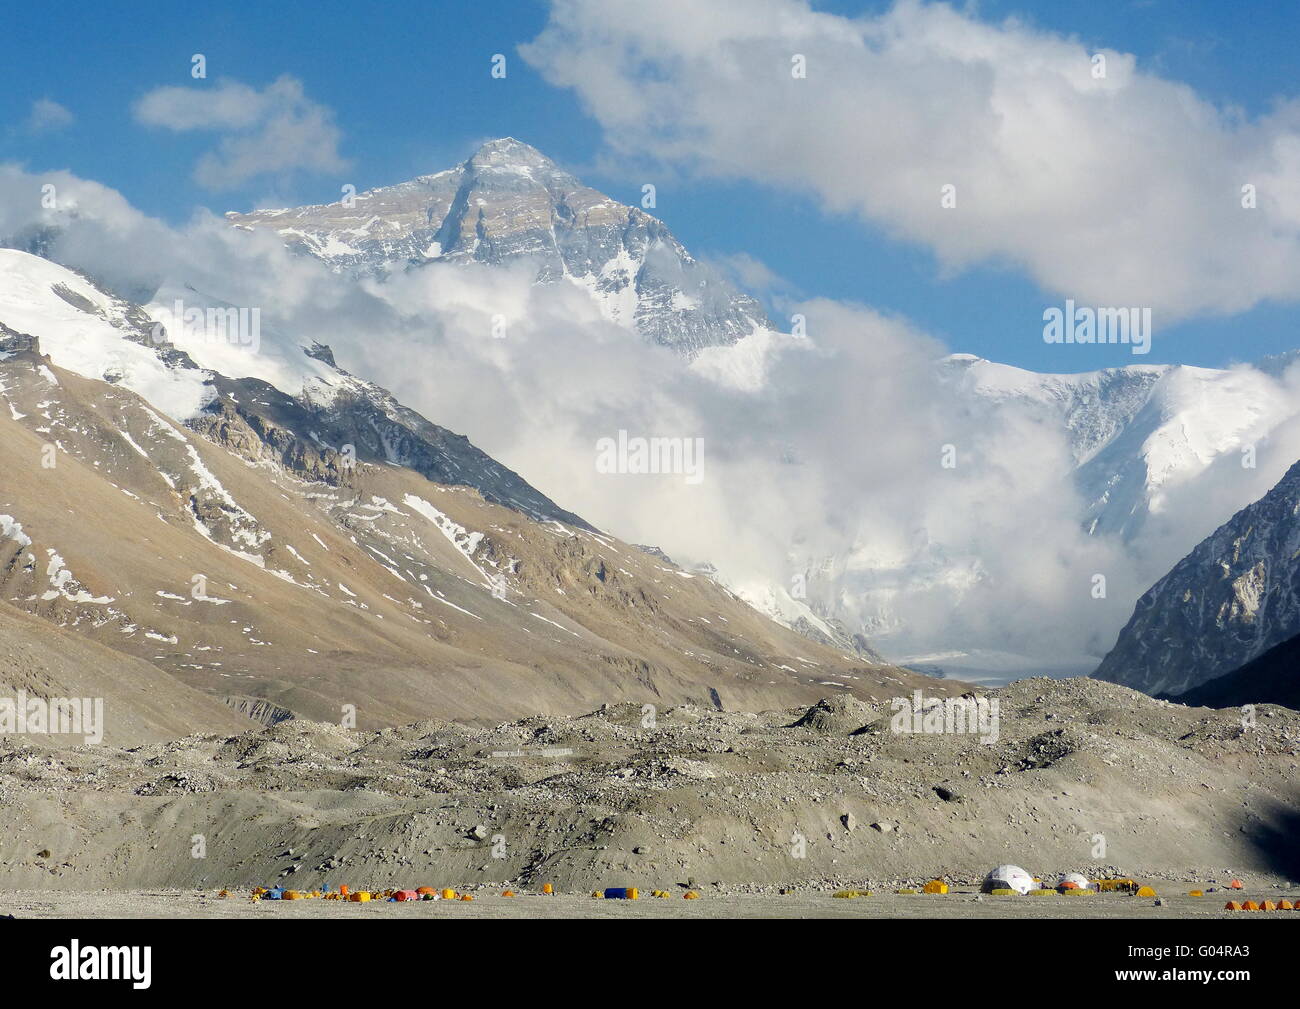 Il monte Everest come si vede dal Campo Base Everest dal Tibet a lato. Le tende in primo piano sono di scalatori del monte Everest. Foto Stock